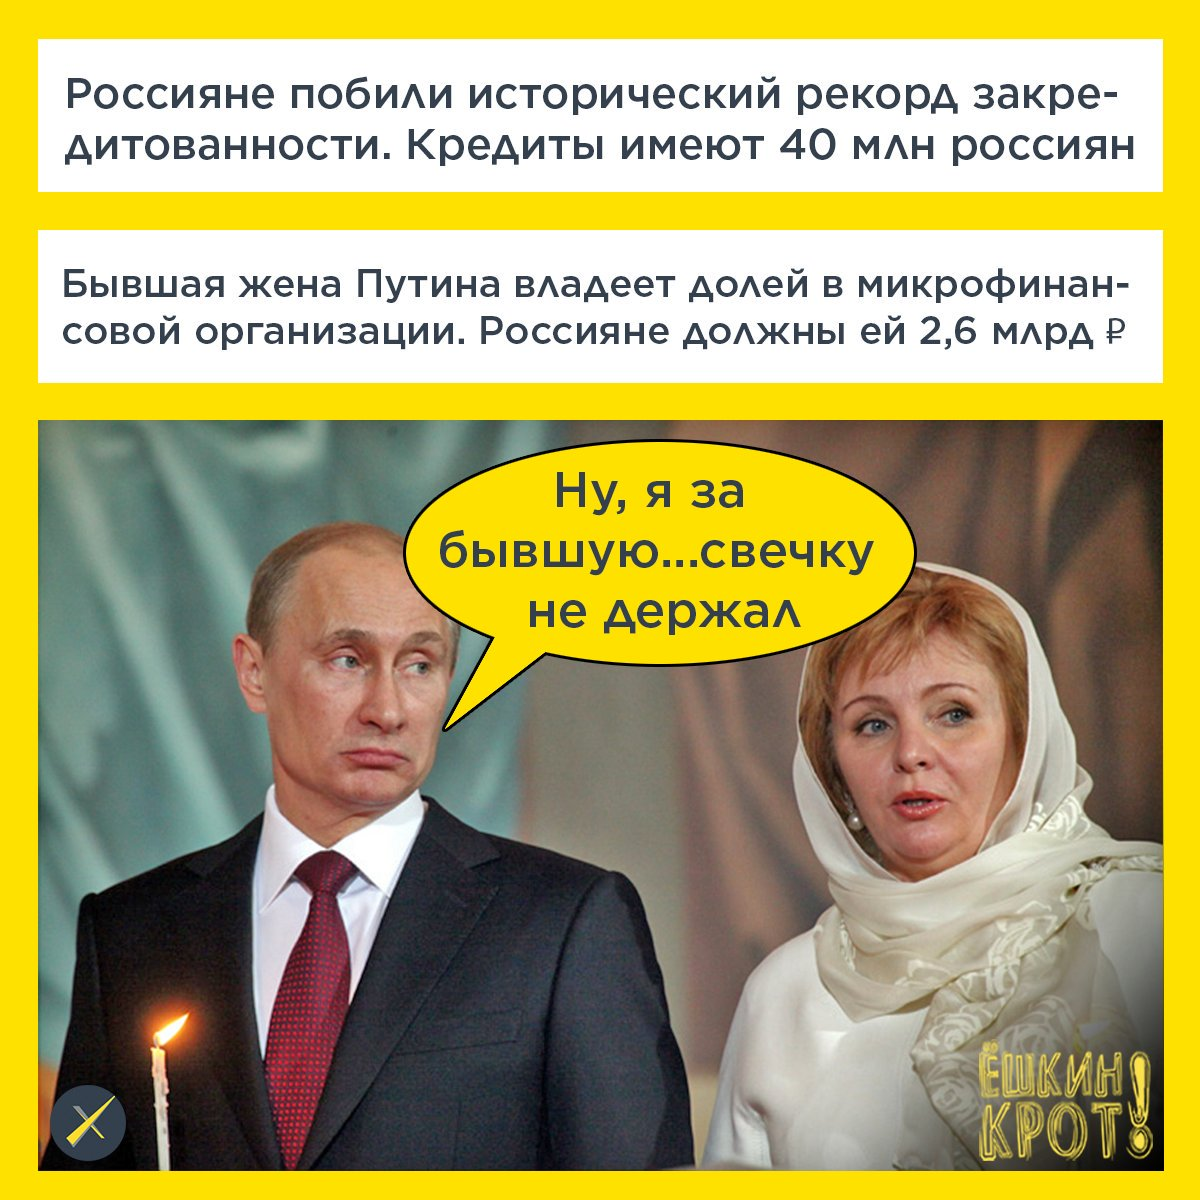 Путинская жена. Бывшая жена Путина. Сообщение бывшей жене